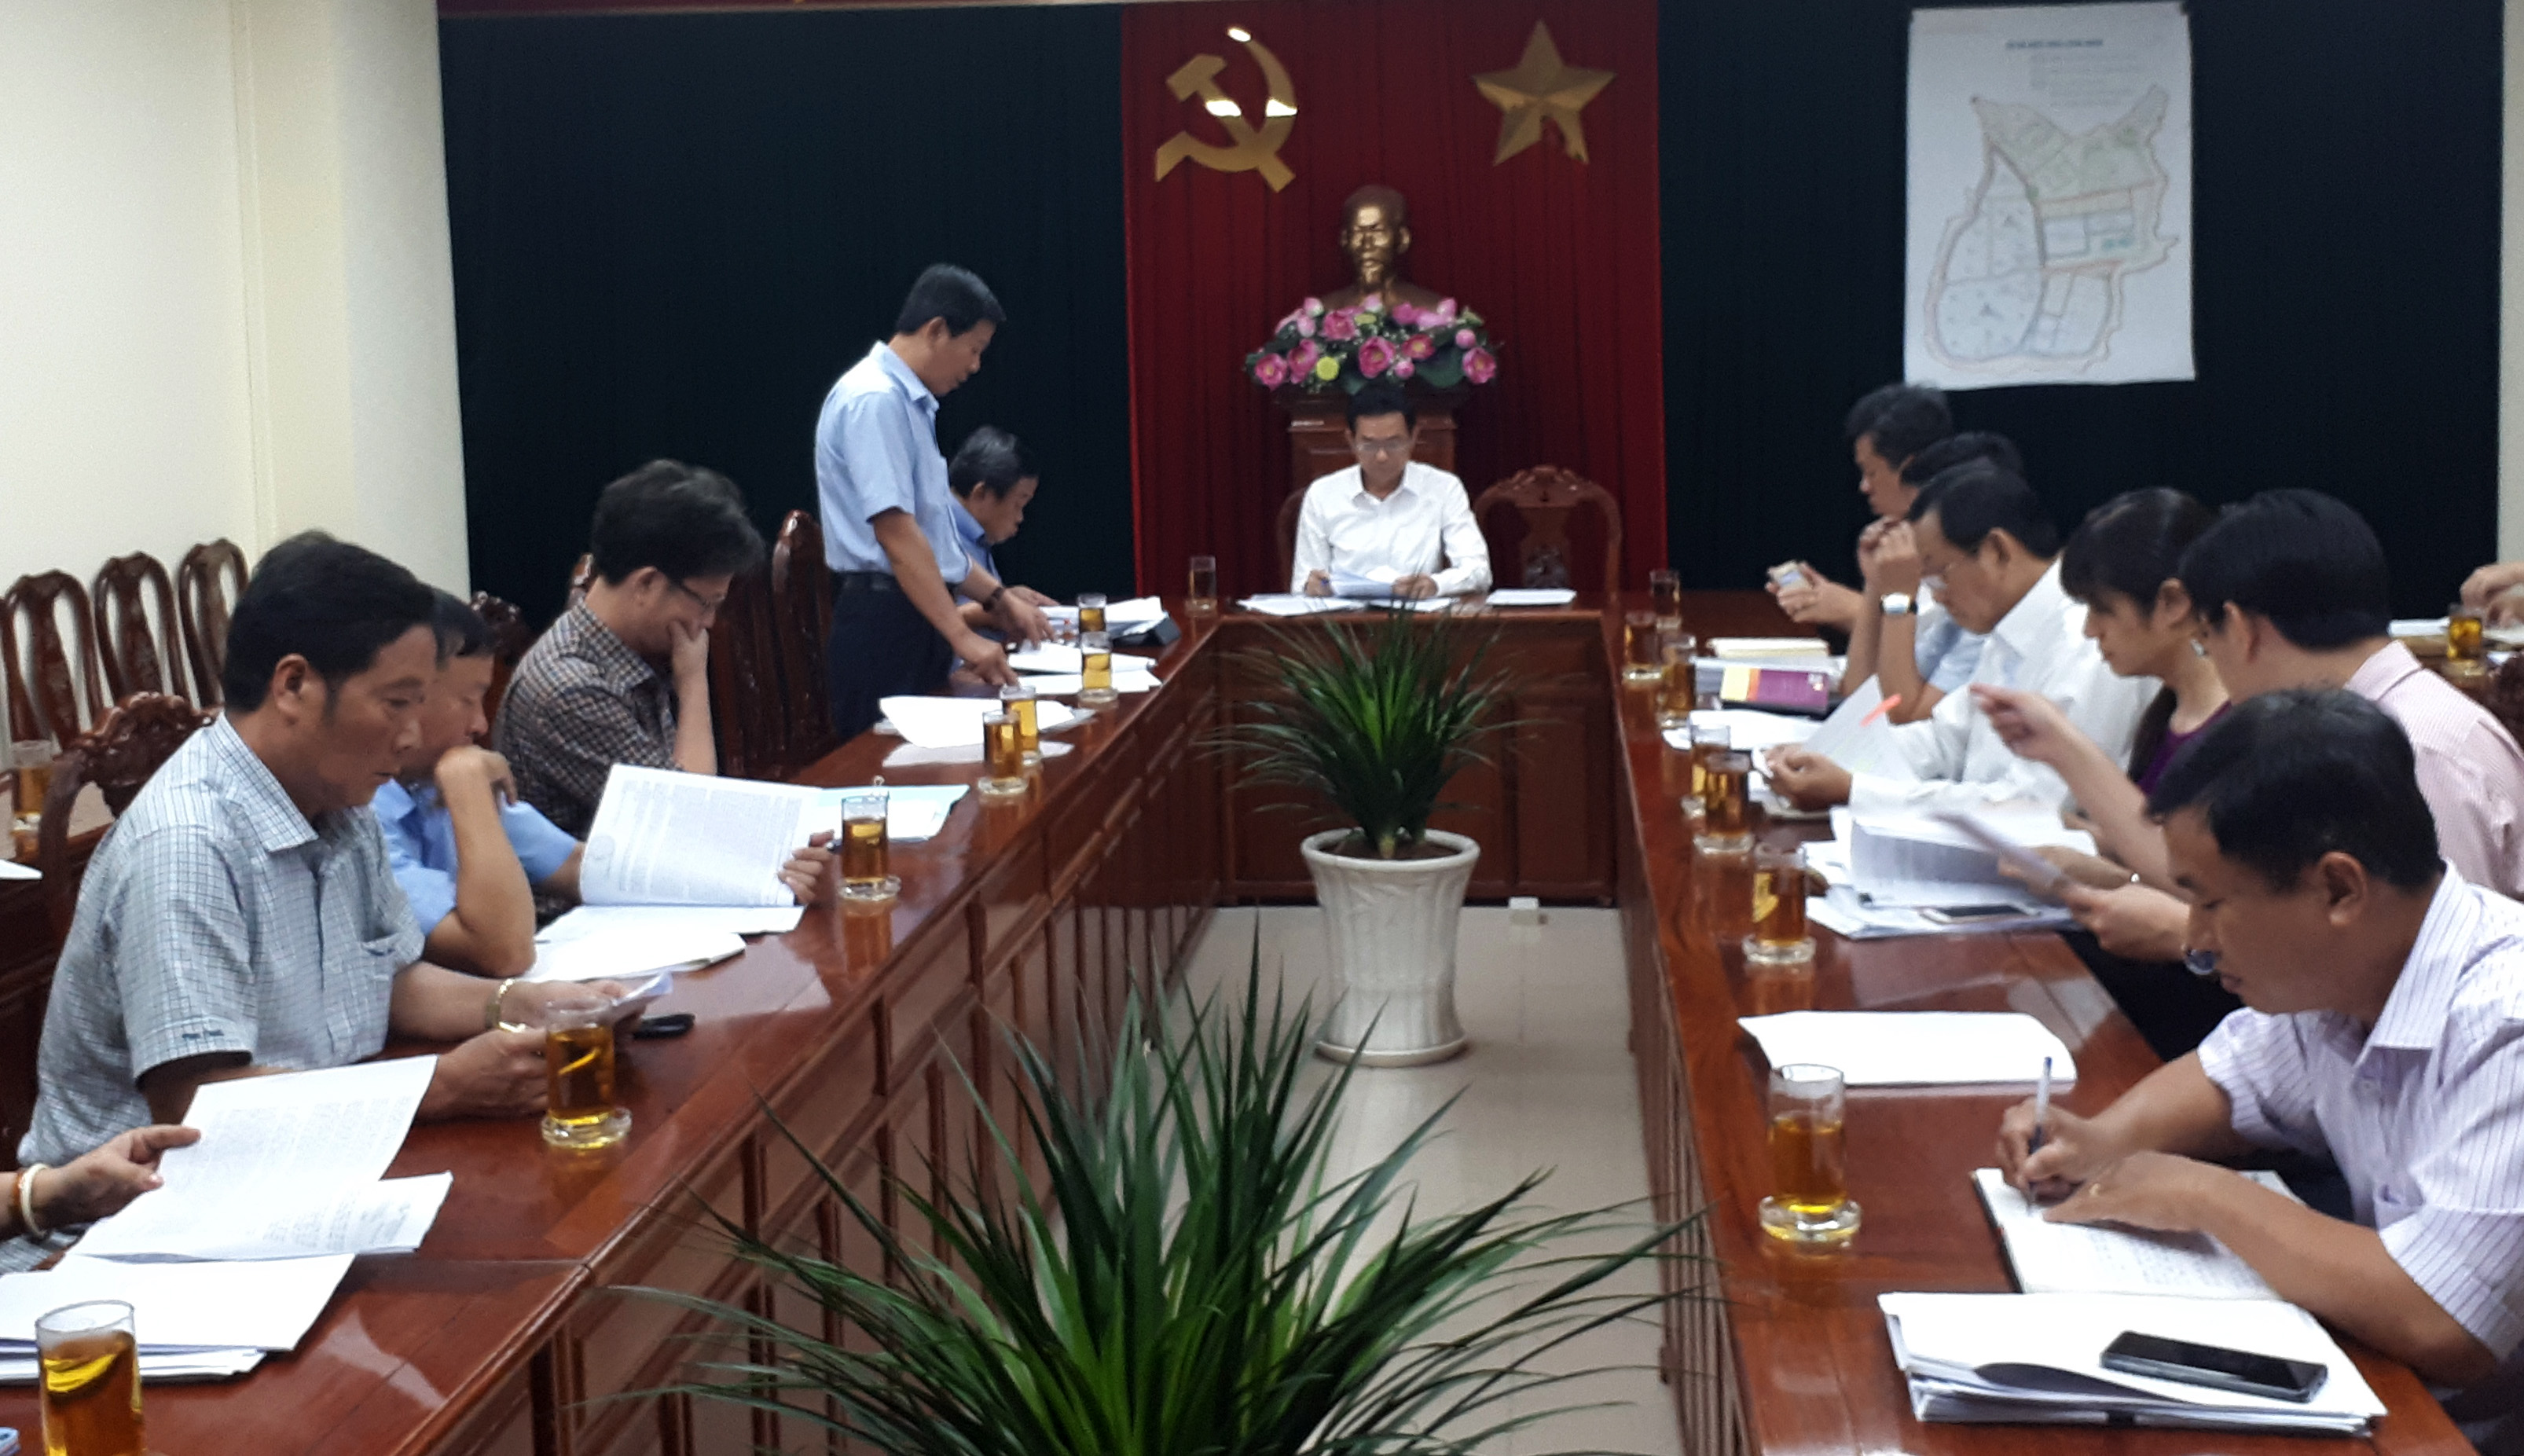 Phó chủ tịch UBND tỉnh Võ Văn Chánh đã chủ trì buổi làm việc.